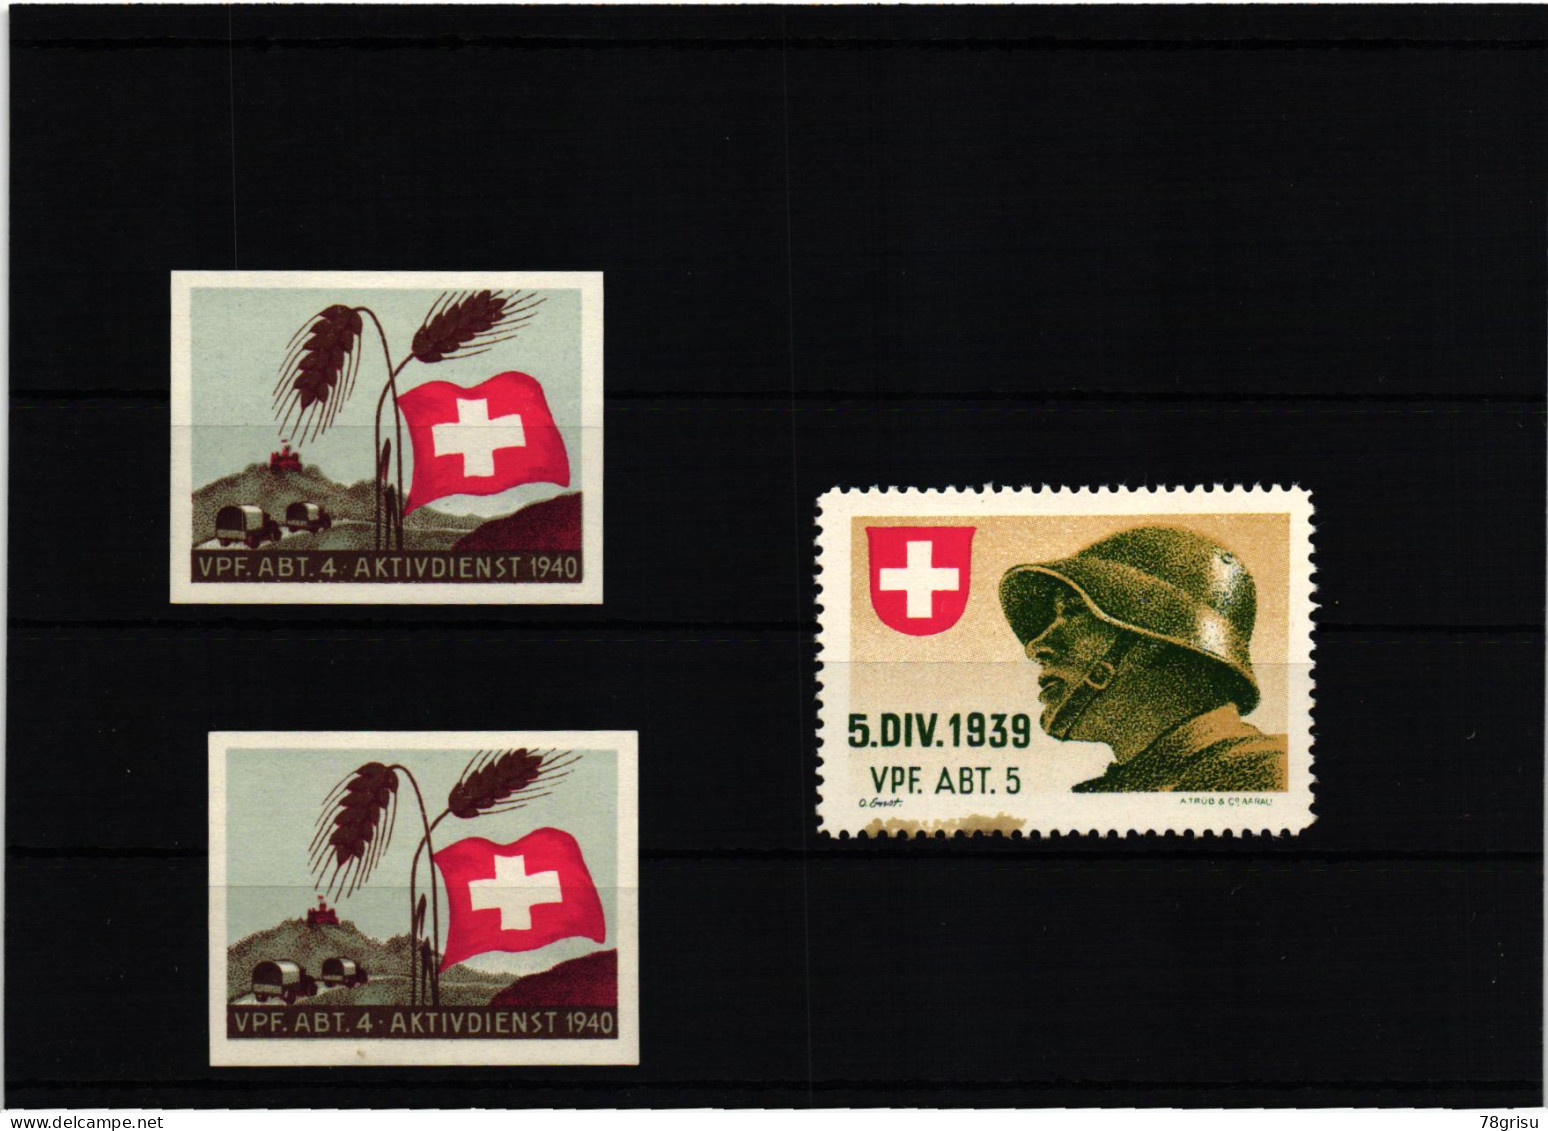 Schweiz Soldatenmarken, Vpf.Abt. Verpflegungs Abteilung Kohldampf 1939 1940 - Etichette